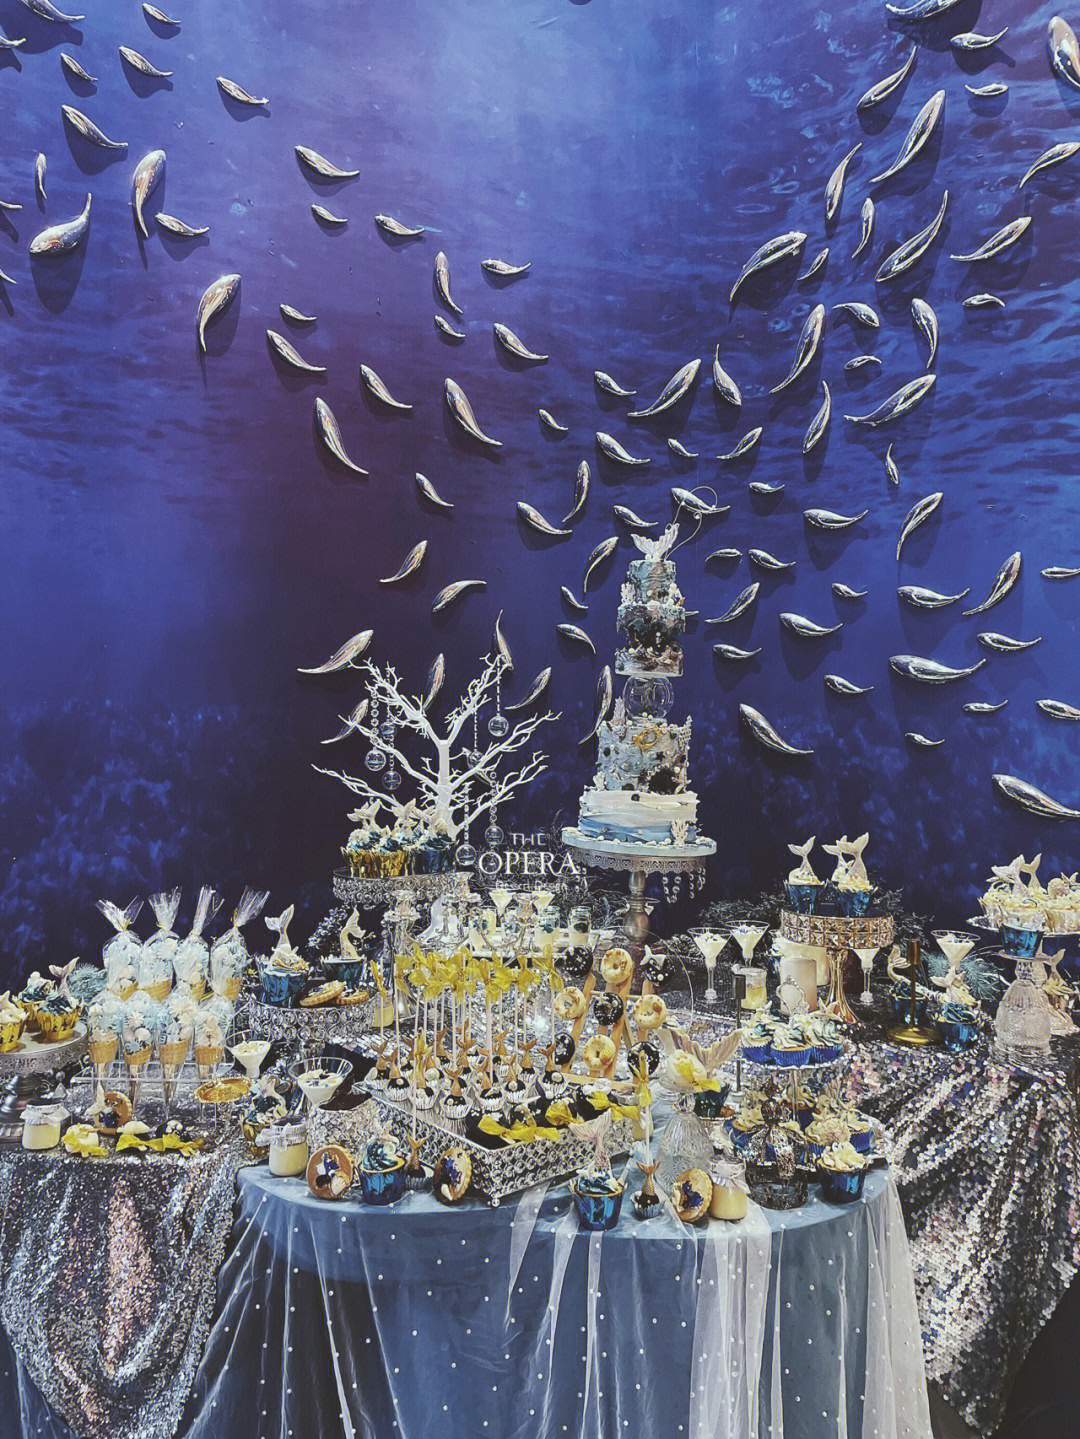 亚特兰蒂斯蓝色海洋美人鱼主题婚礼甜品台